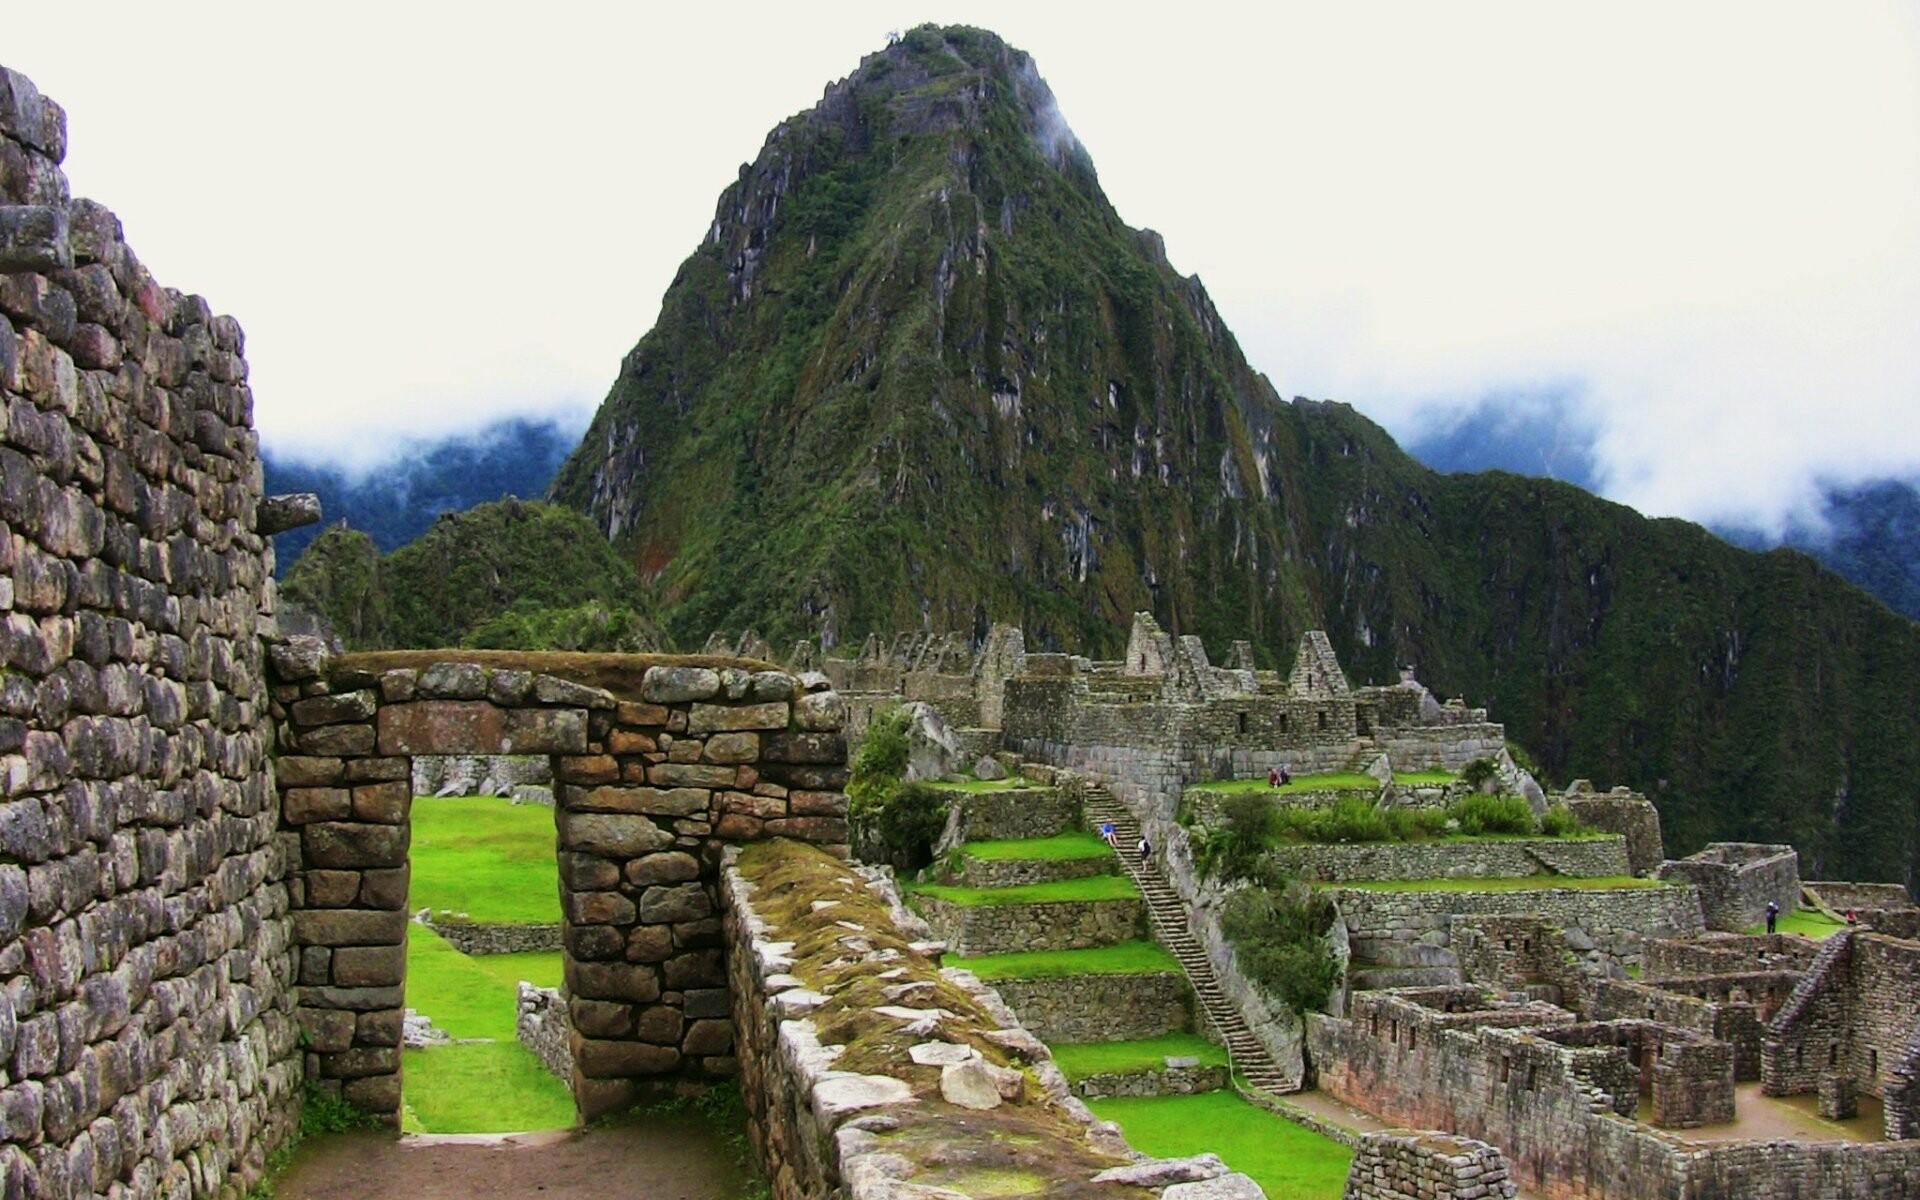 Machu Picchu: Incan citadel, Historical place, Natural landscape. 1920x1200 HD Wallpaper.